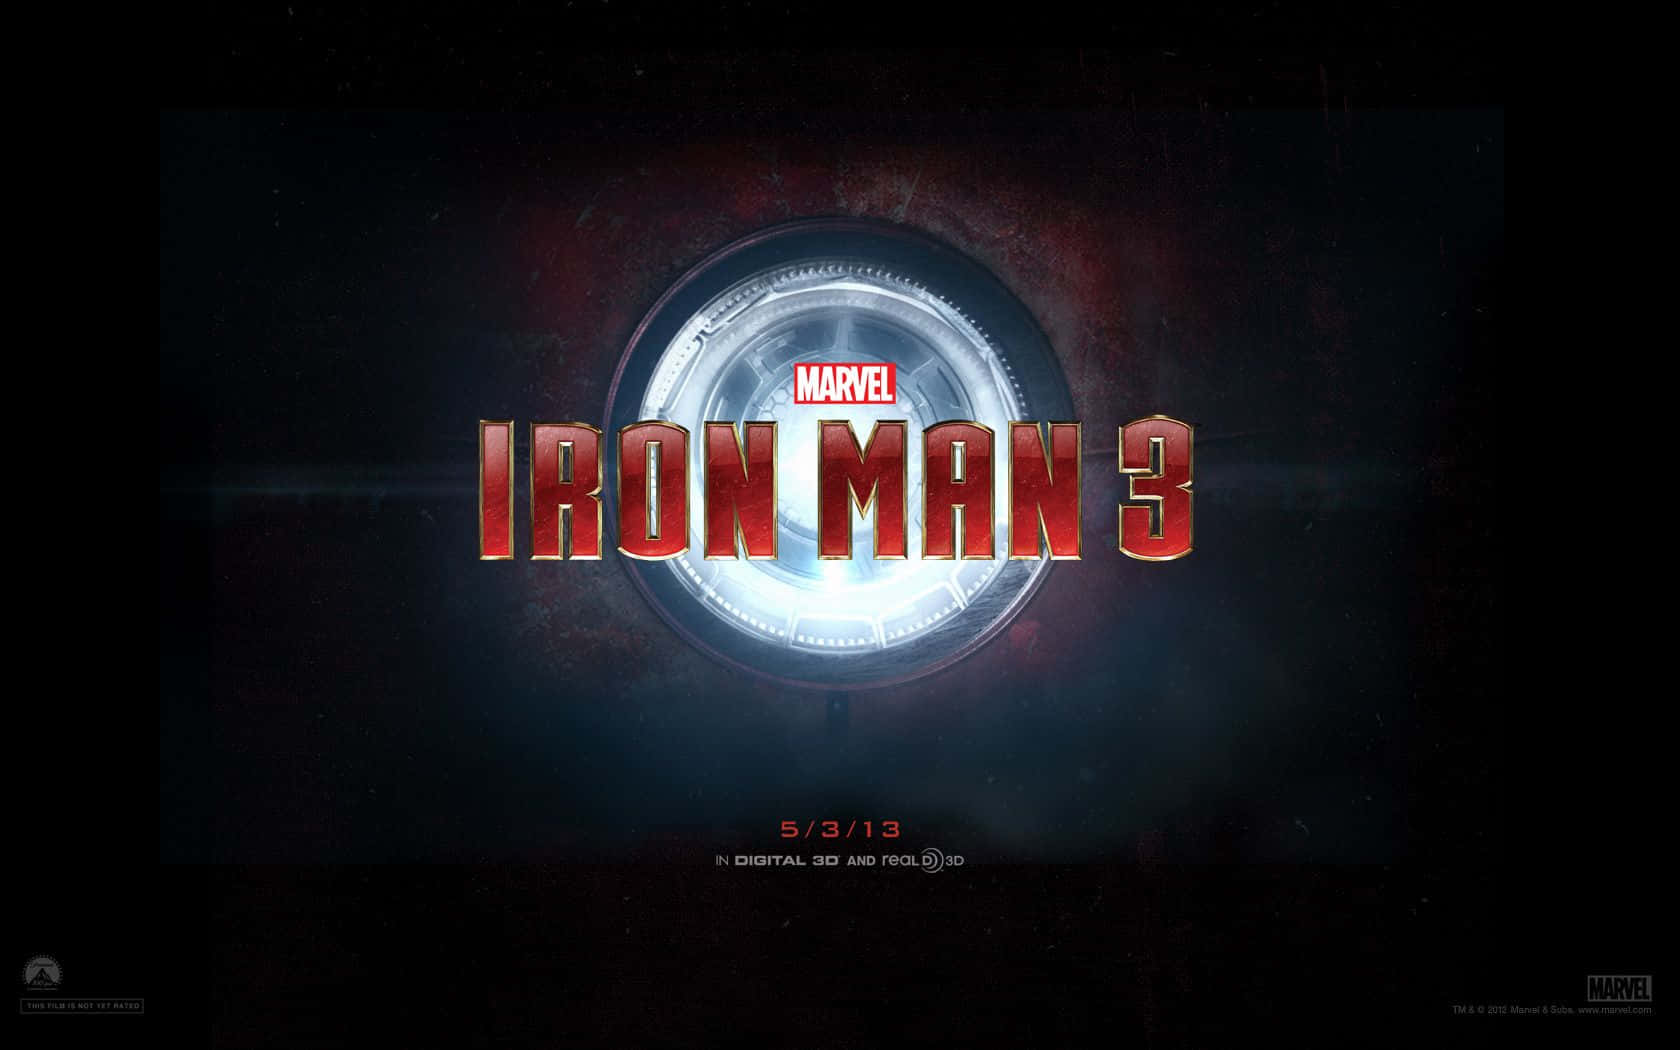 Iron Man 3 Logo With A Dark Background